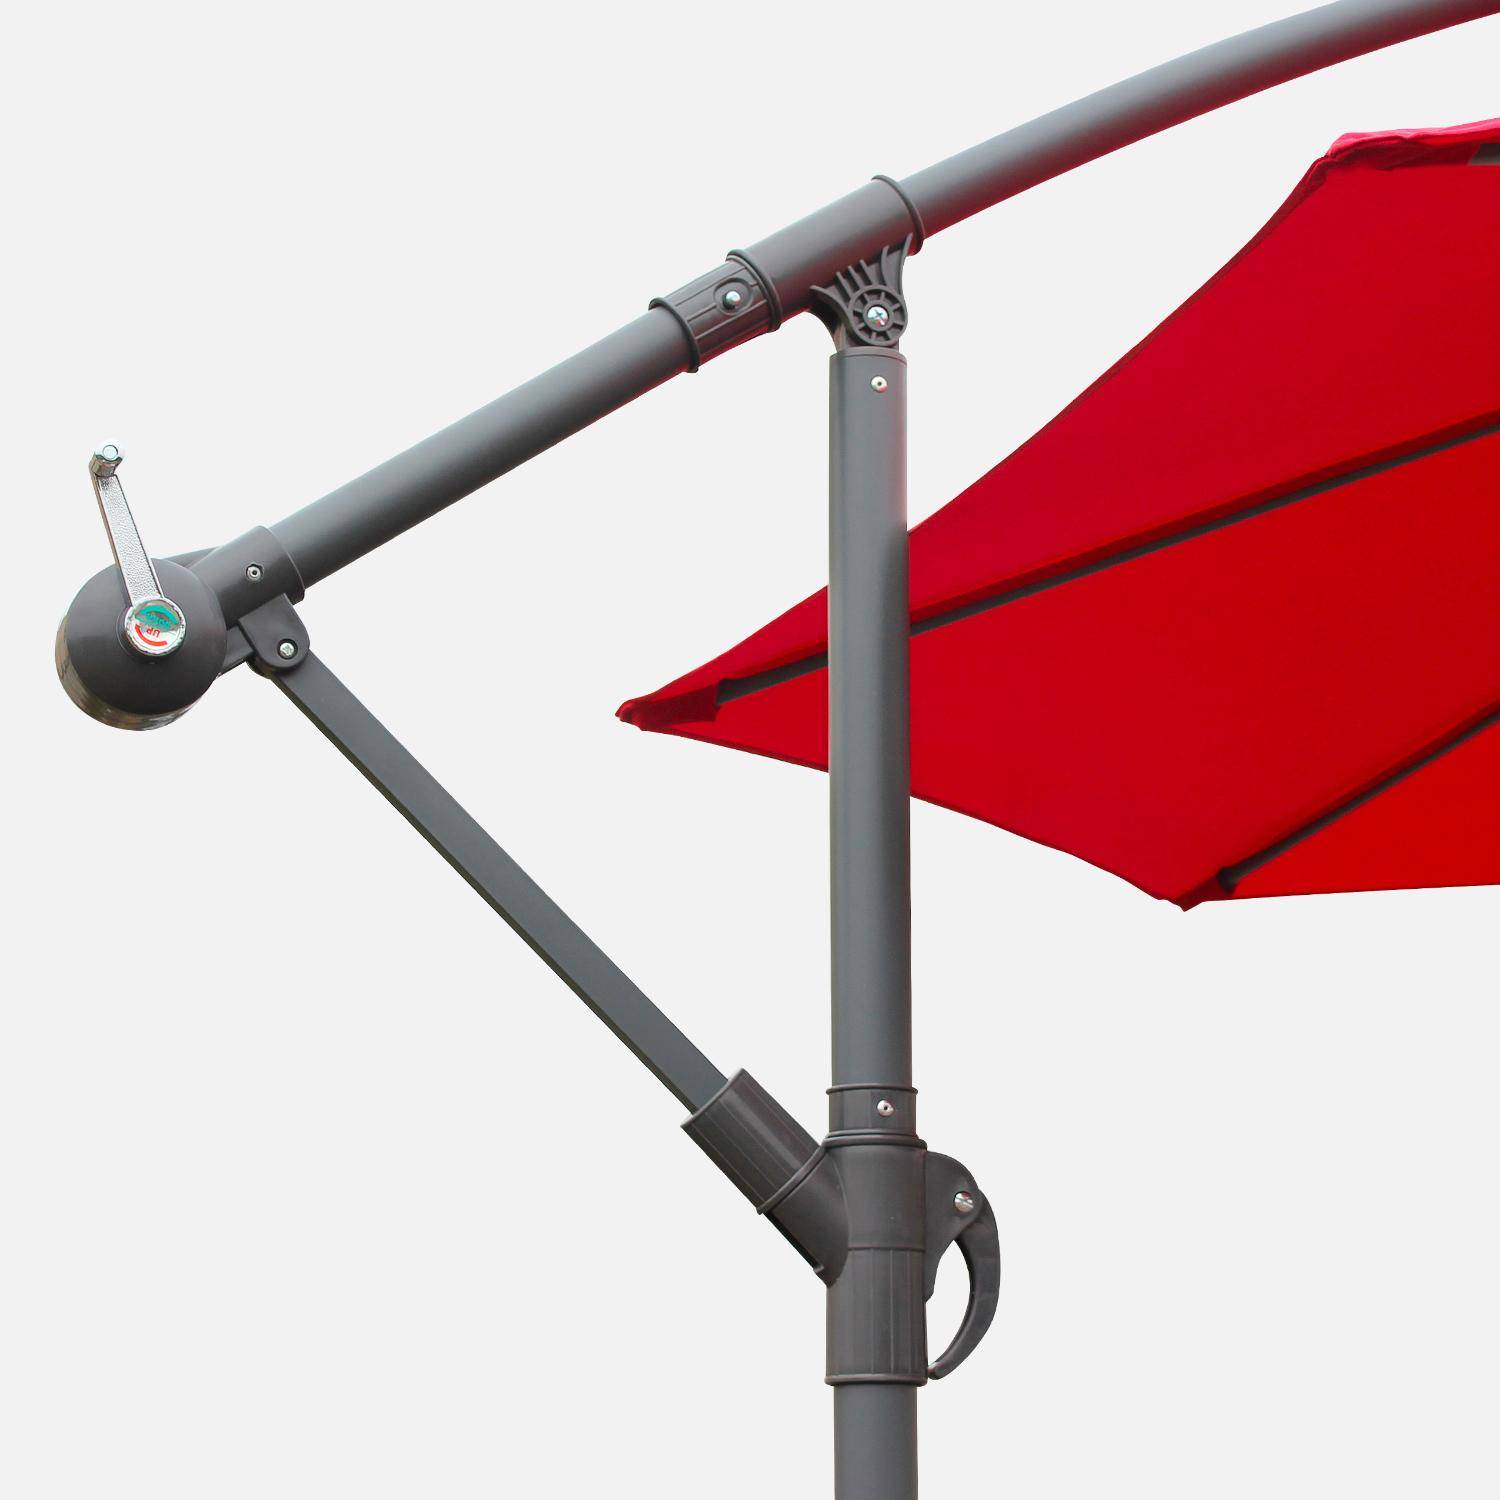 Paraguas redondo deportado 3x3m - Hardelot - Rojo - Manivela antirretorno | Tejido repelente al agua | Fácil de usar Photo4